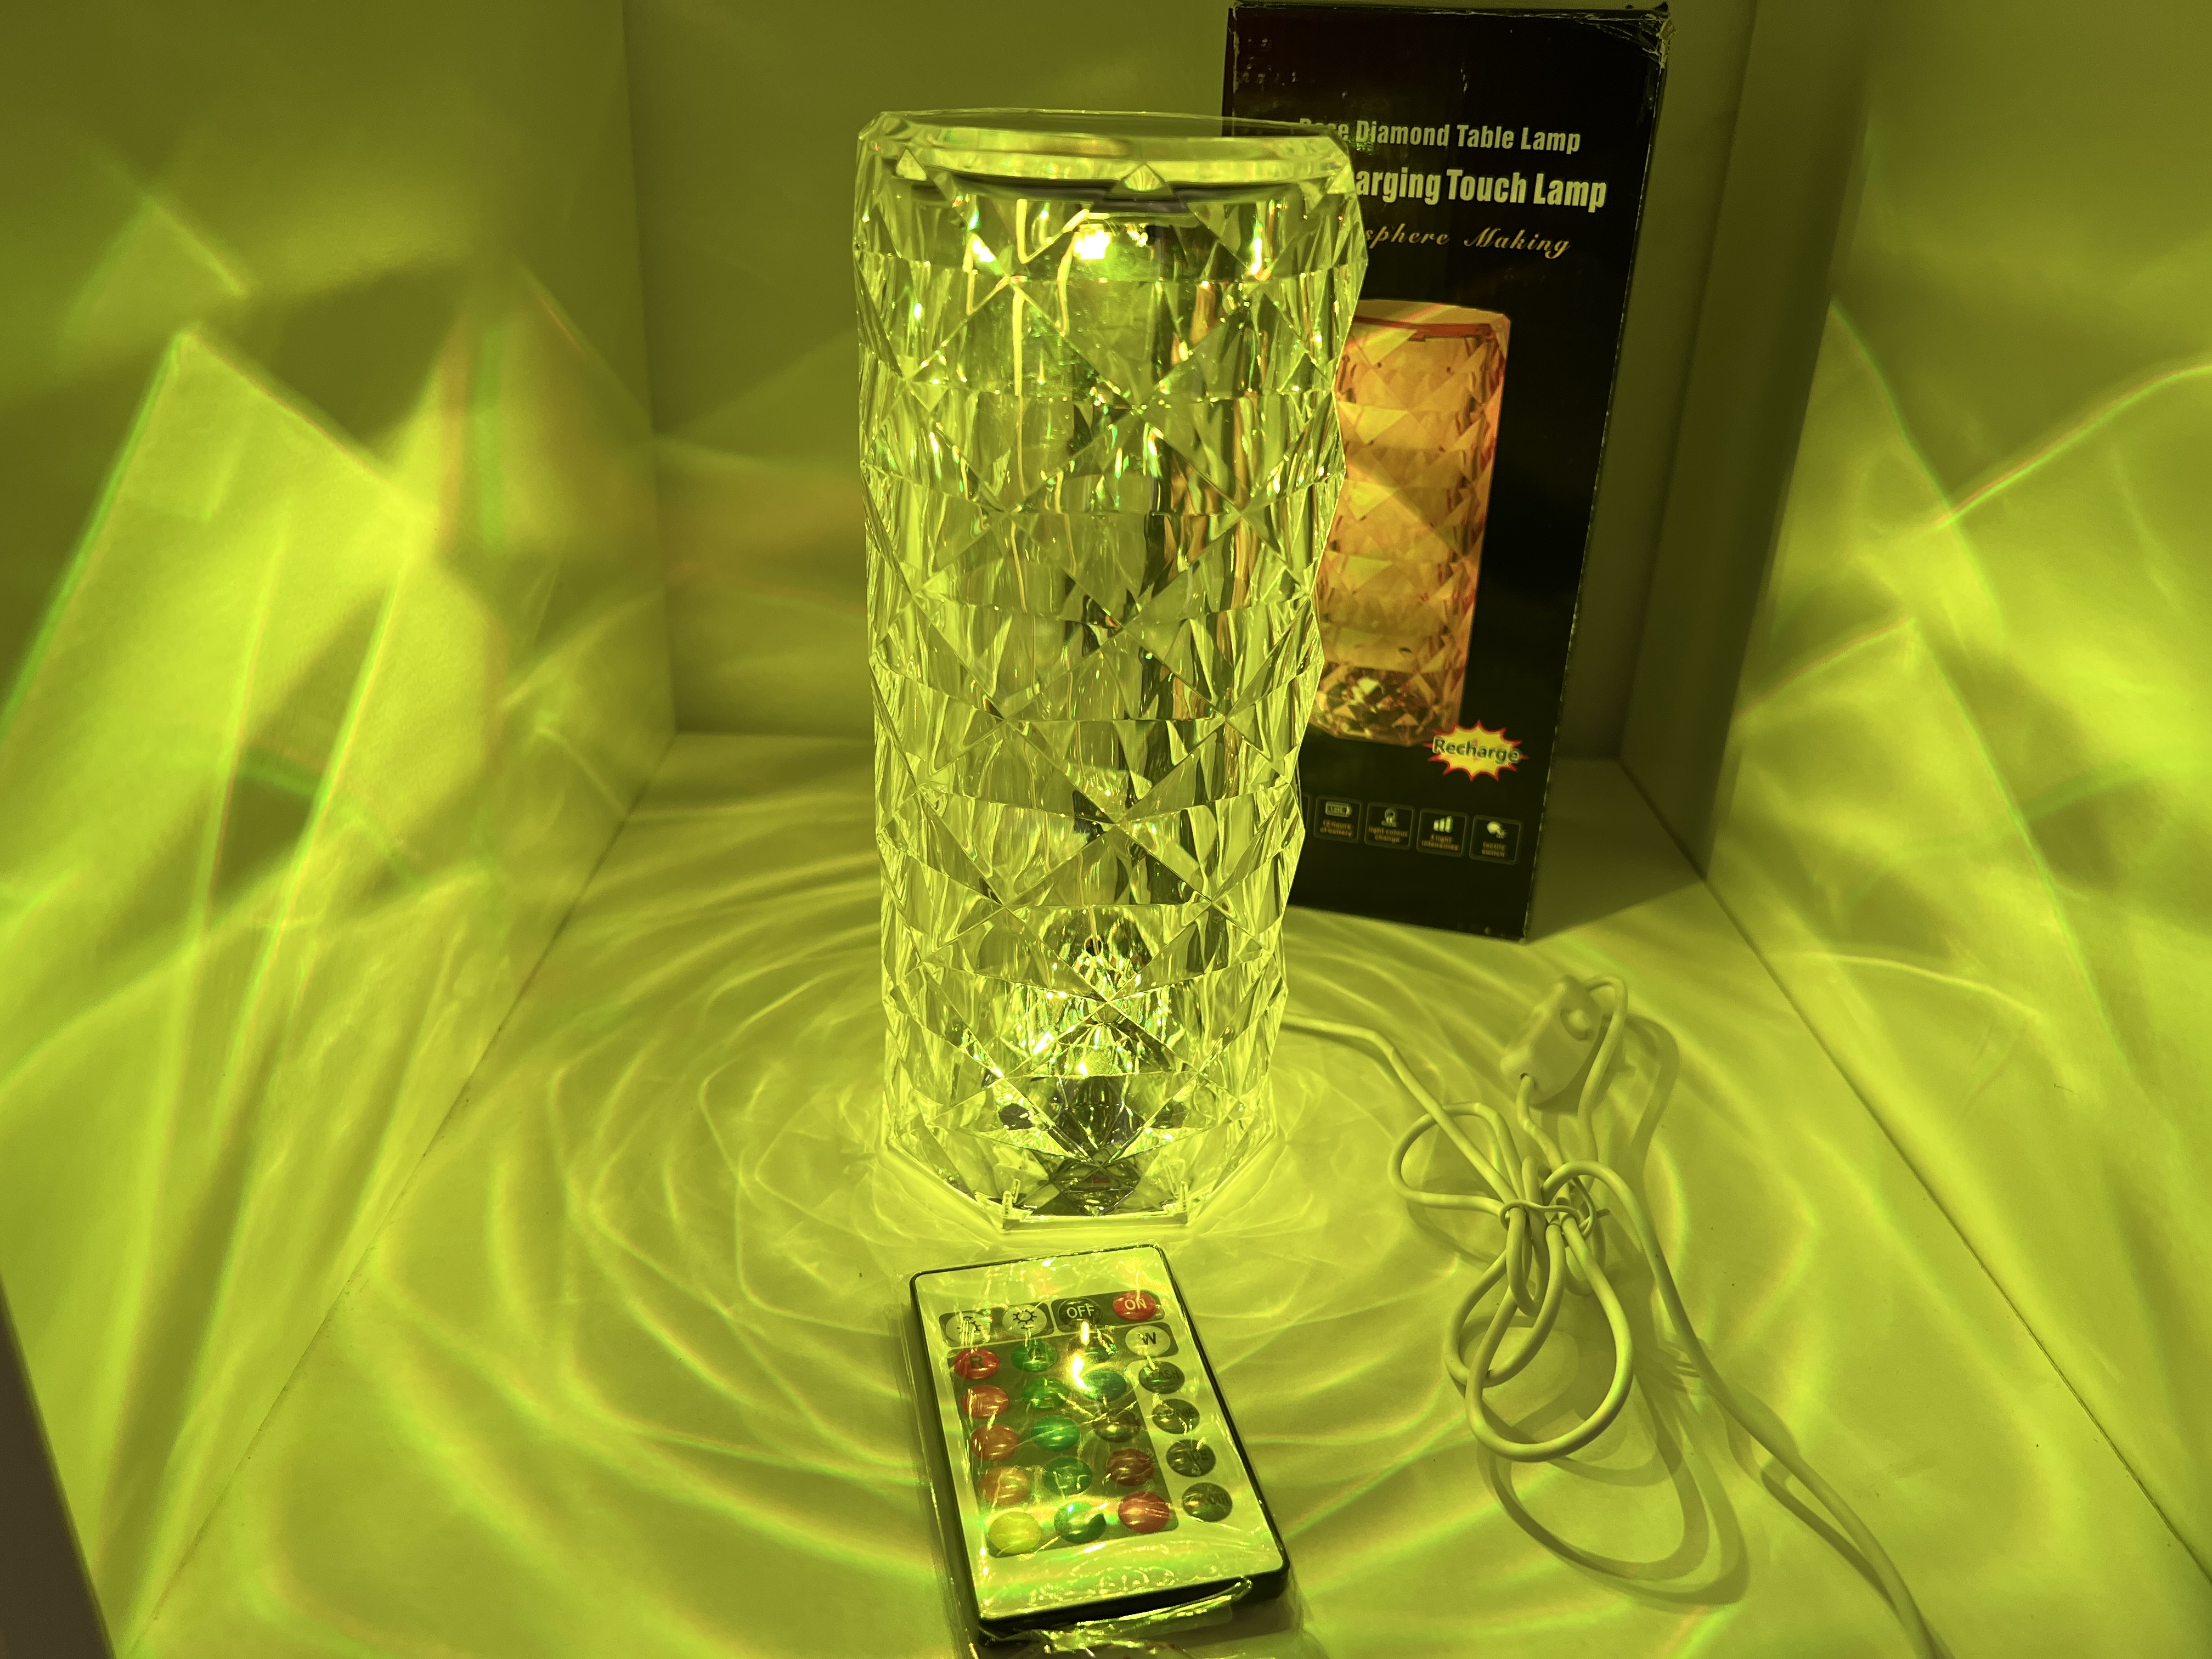 Tischlampe Rosen Diamant Lampe. 16 verschiedene Farbeffekte. Inkl. Fernbedienung. Neuware 